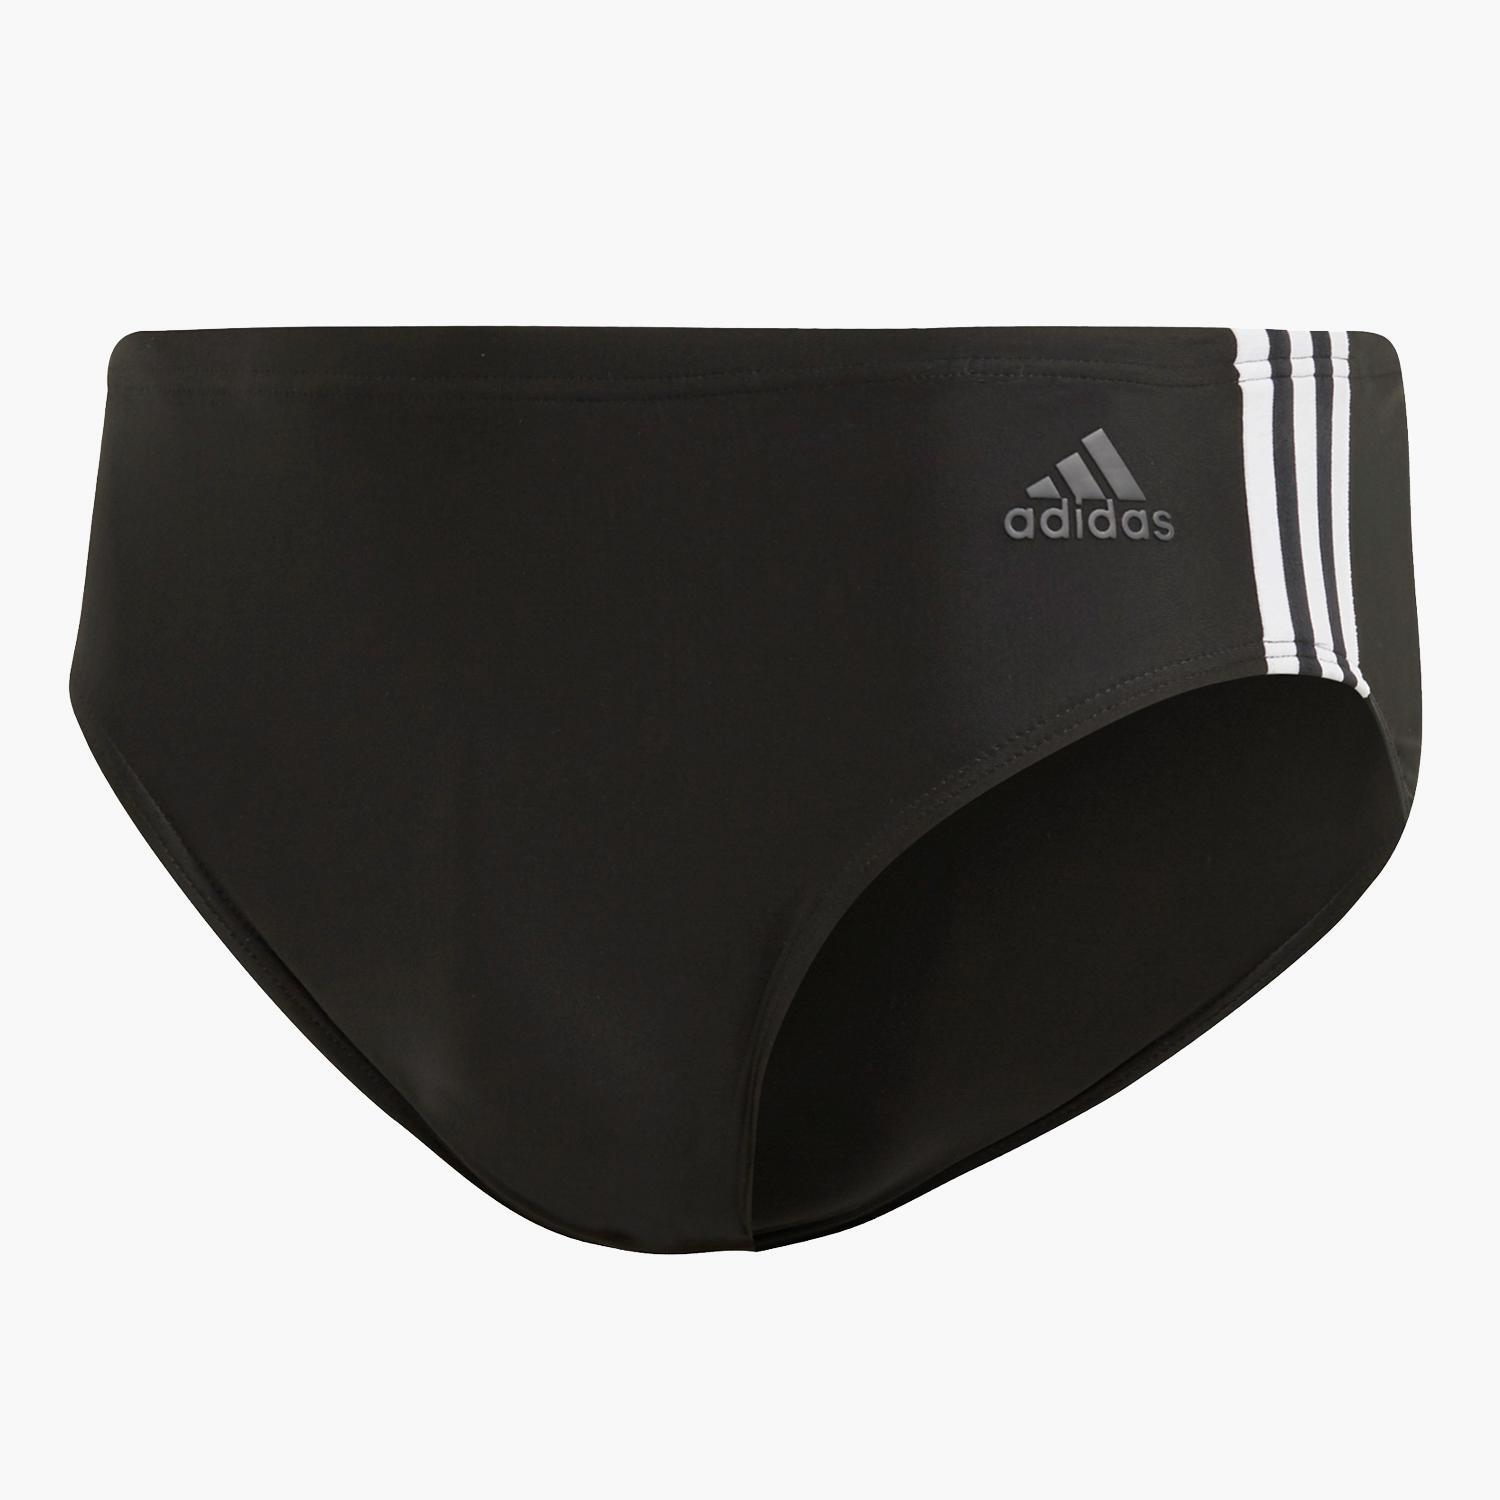 adidas Fit - Noir - Maillot de bain Slip Homme sports taille XL